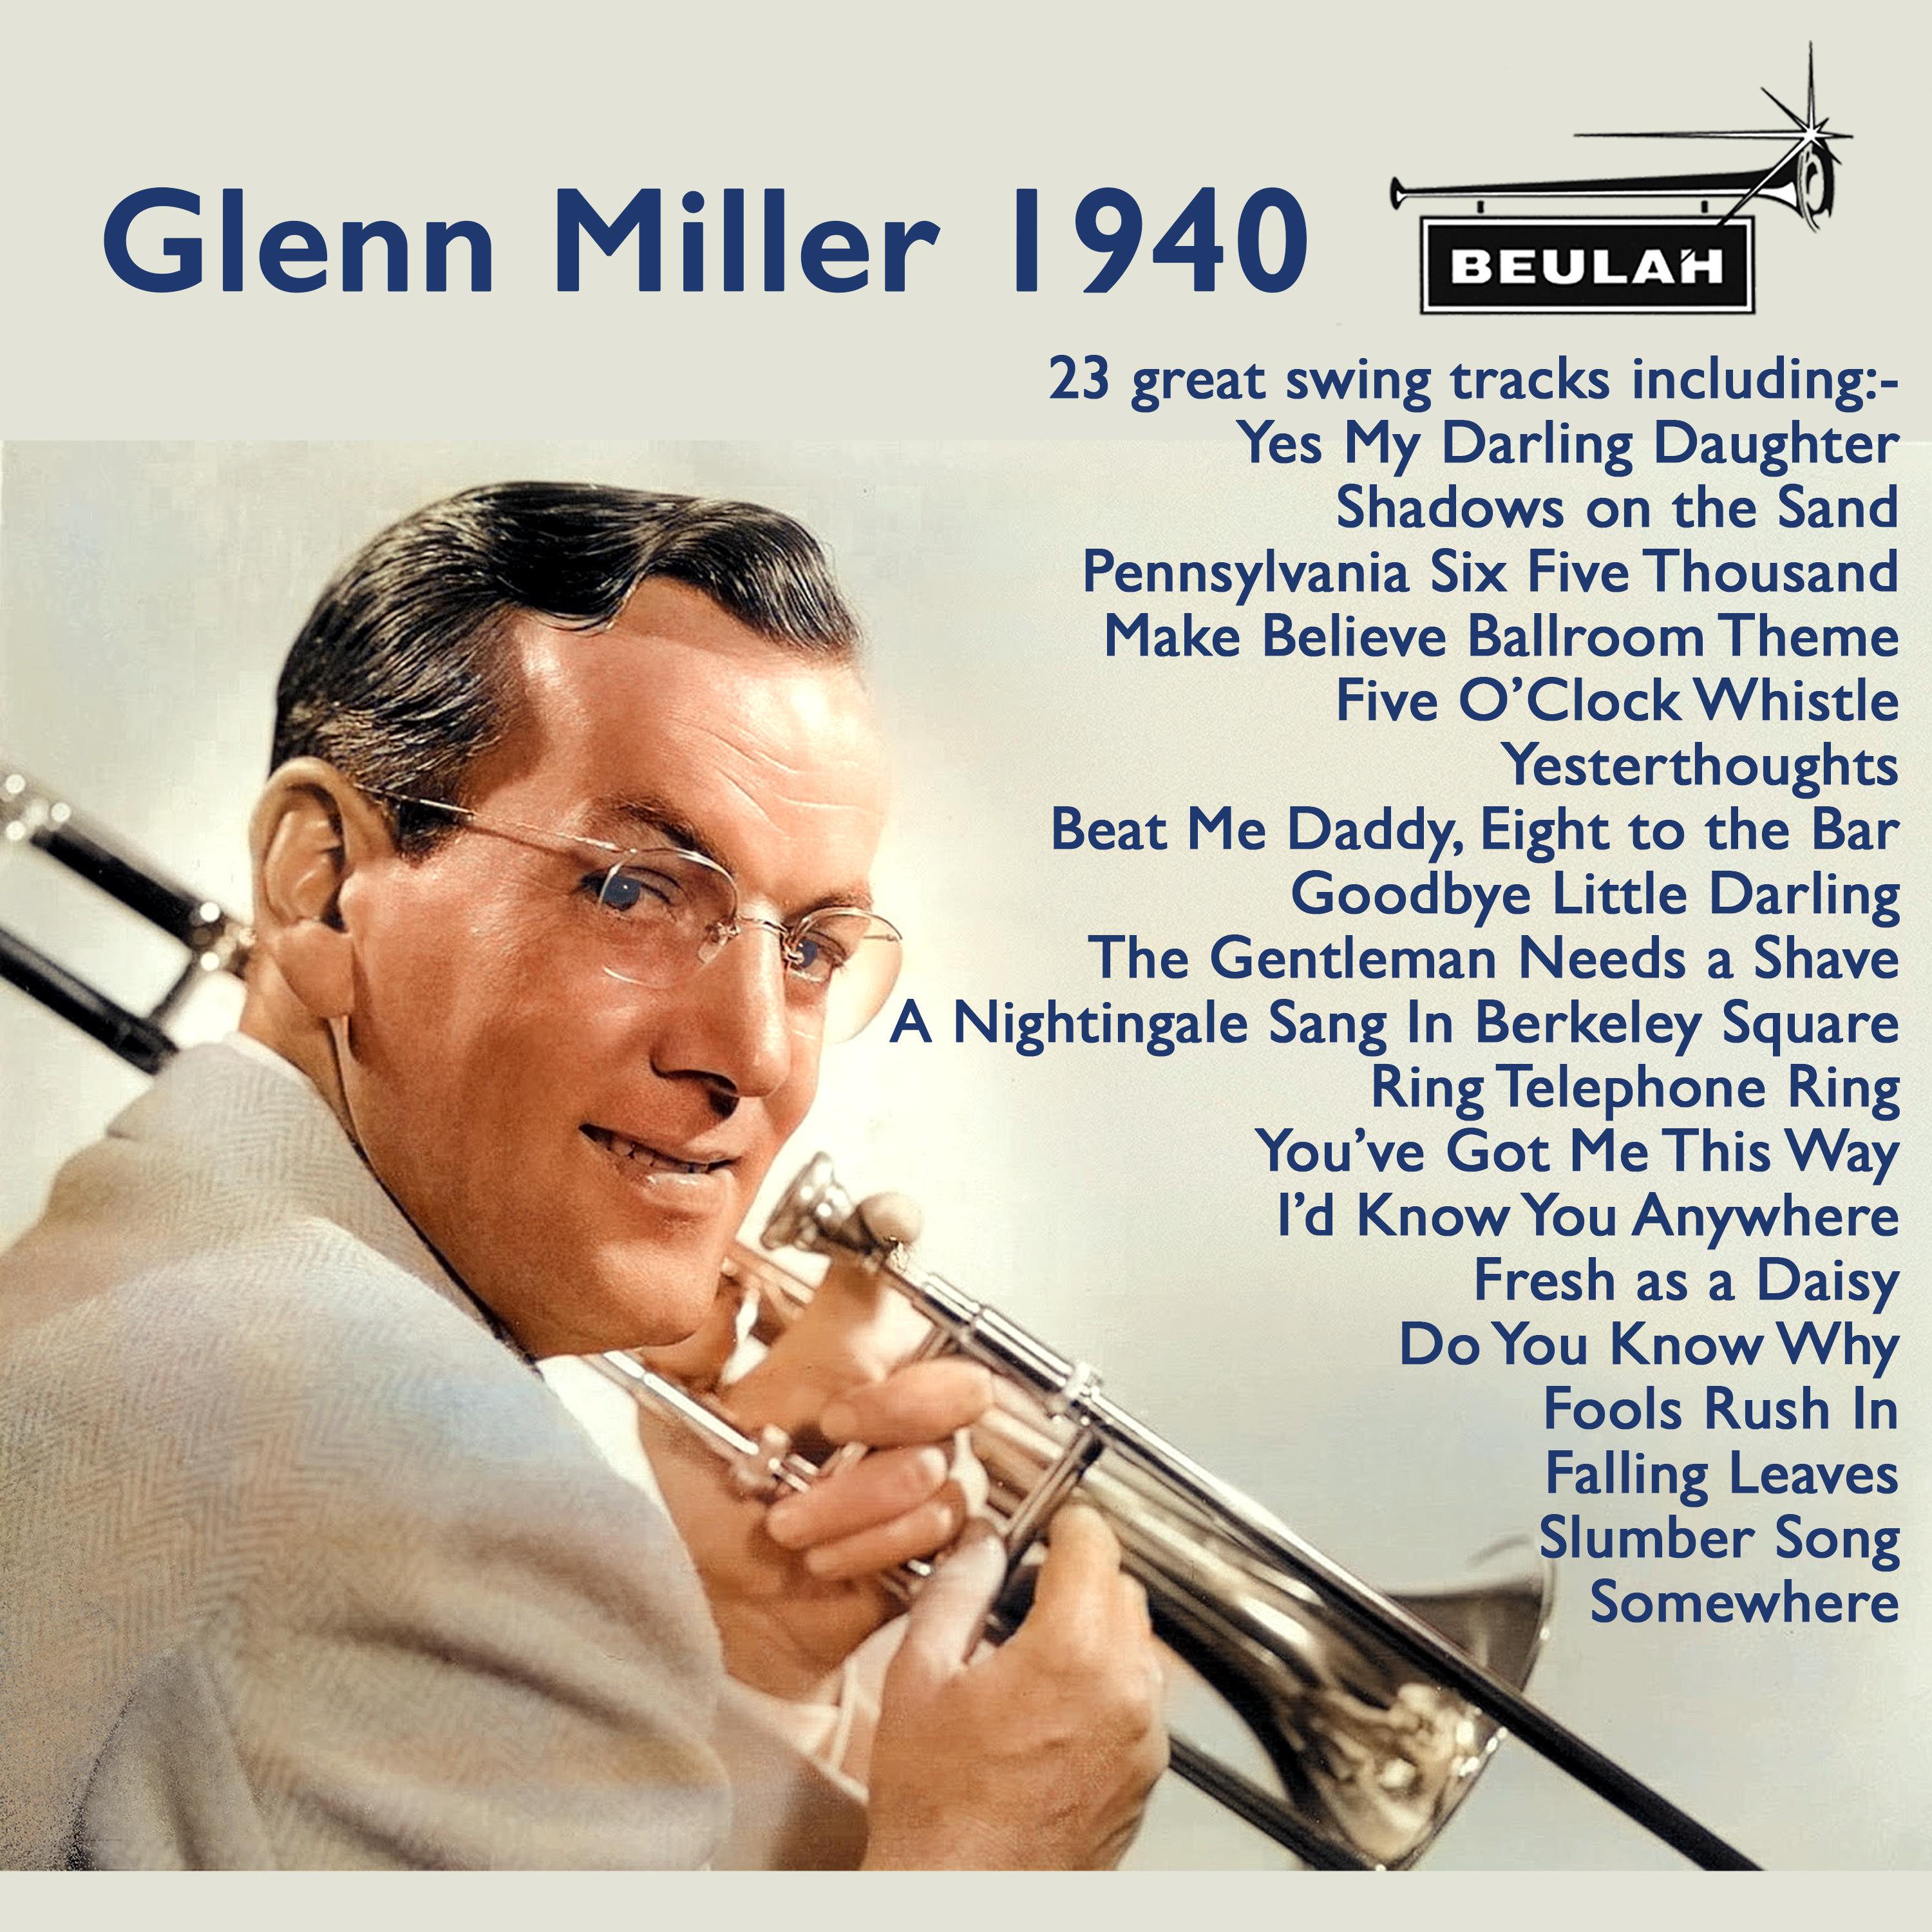 Glen Miller 1940